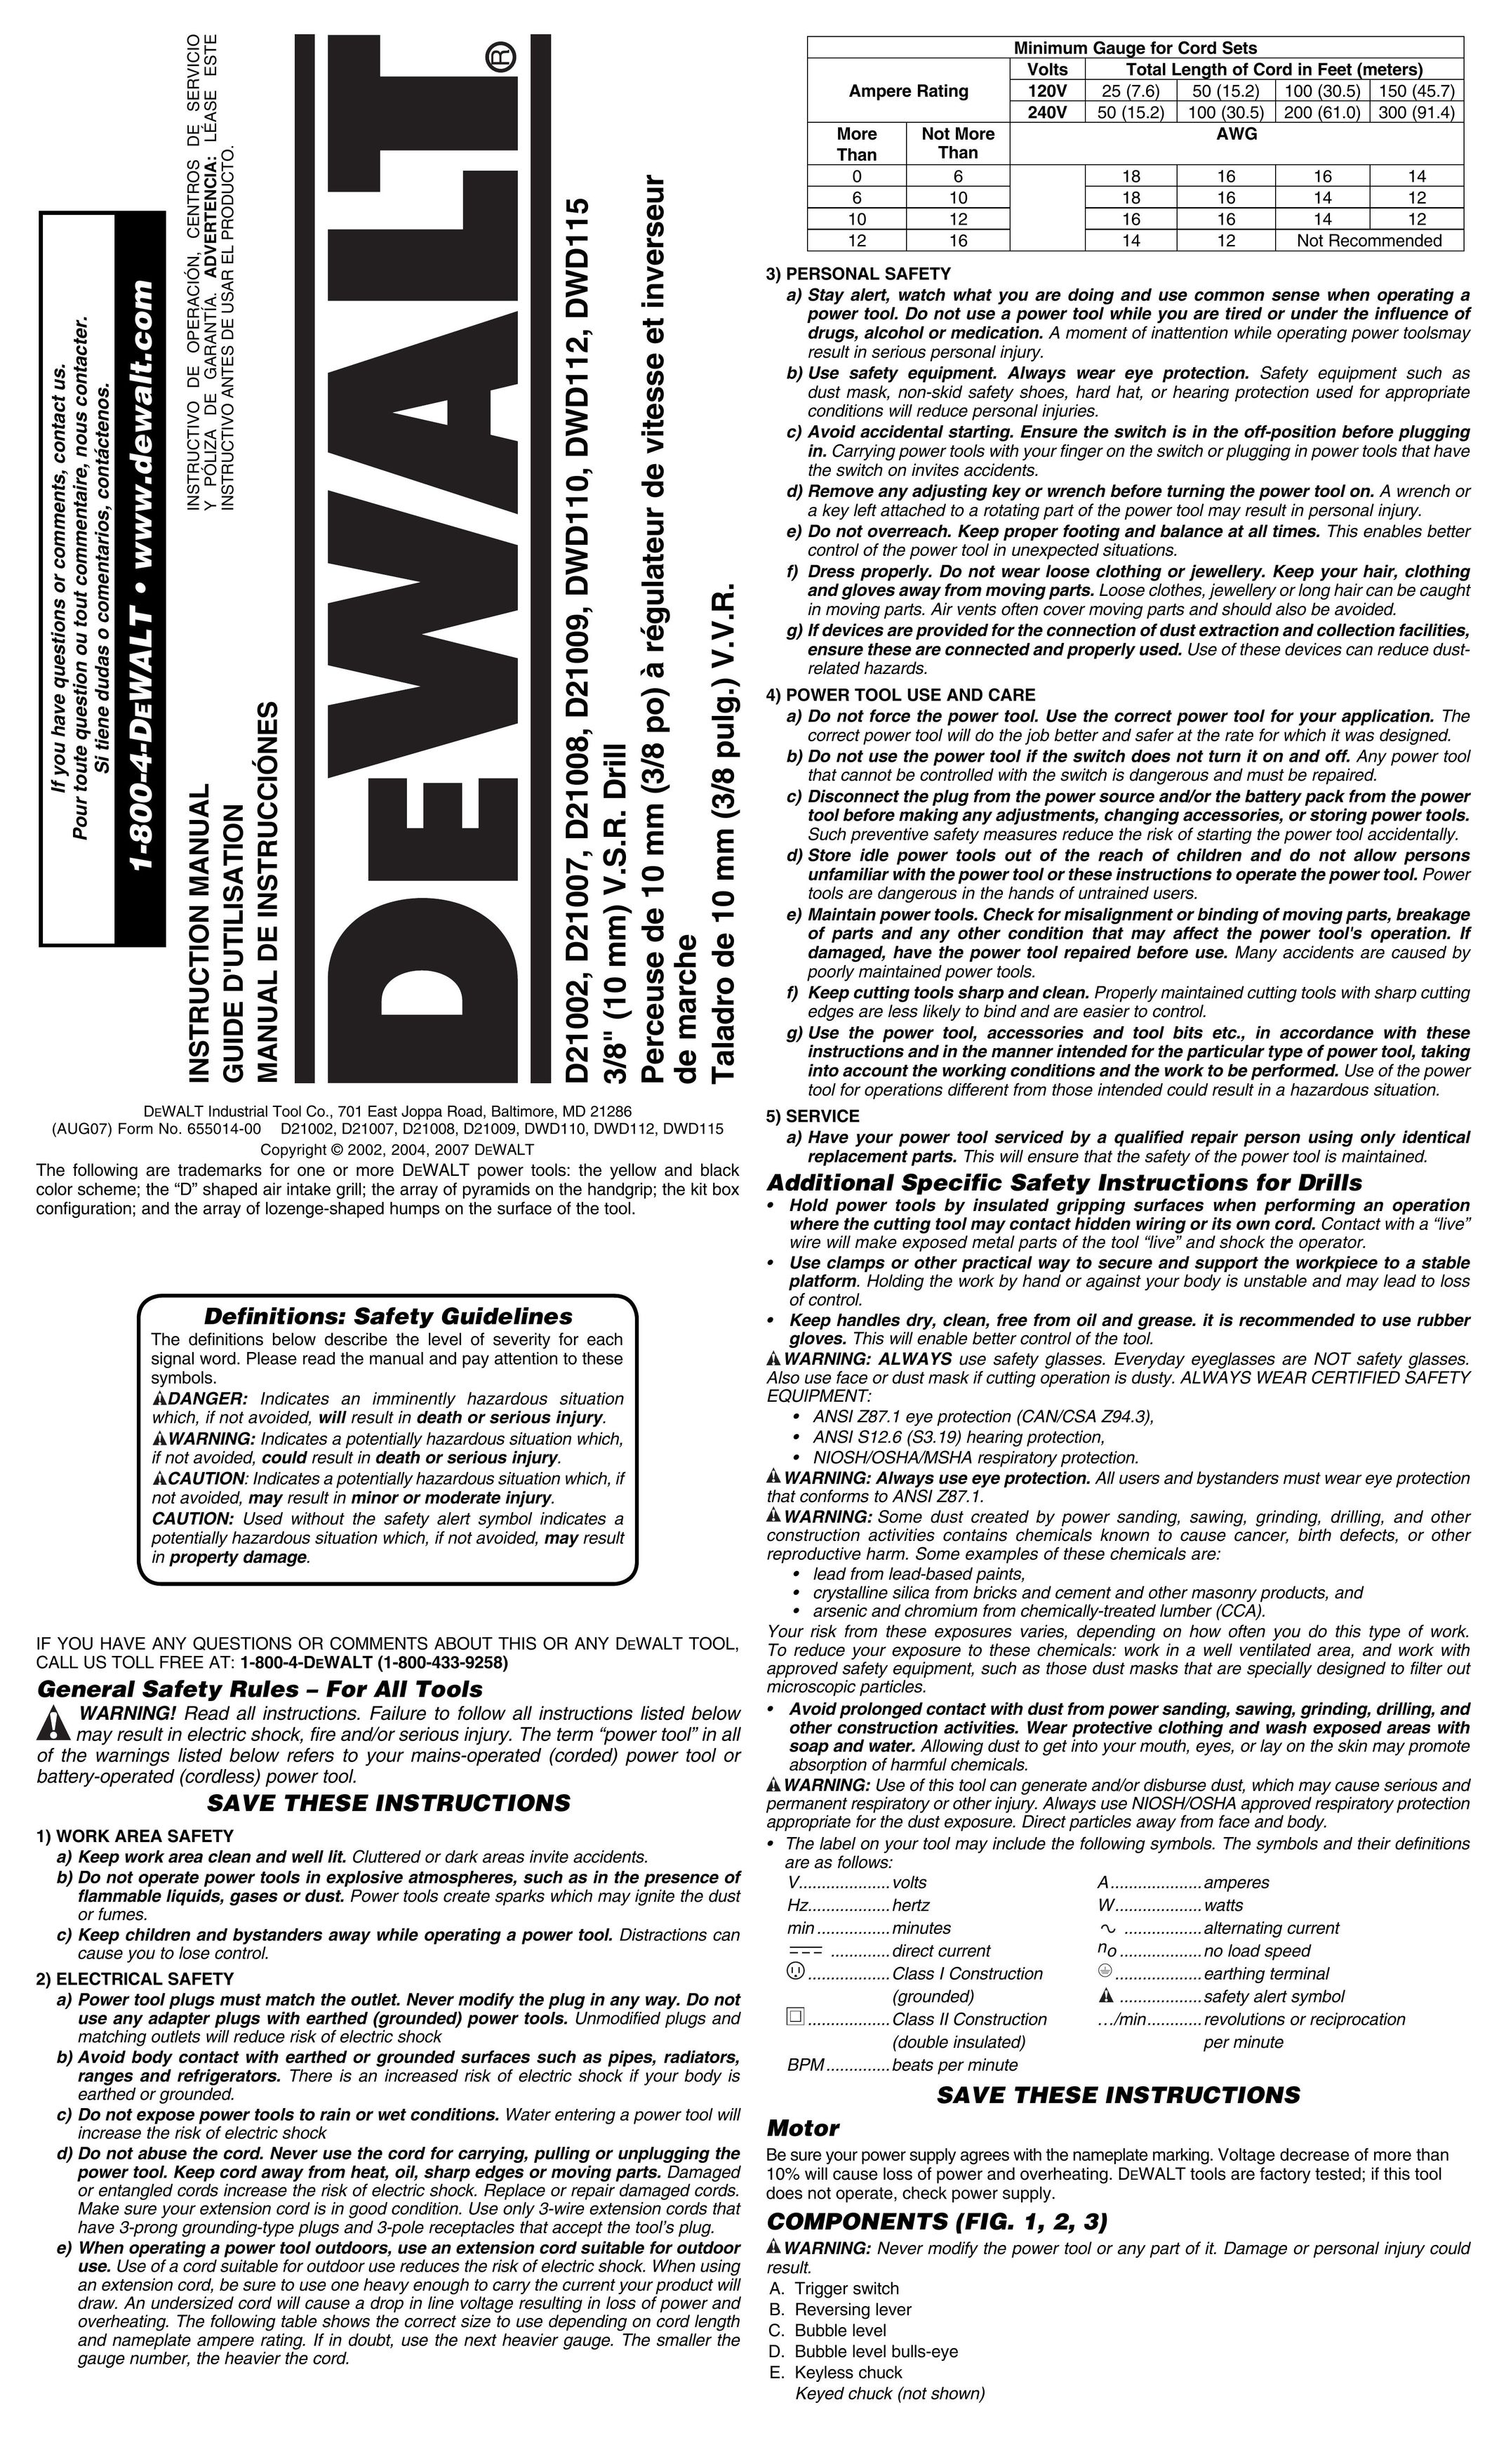 DeWalt D21008 Home Safety Product User Manual